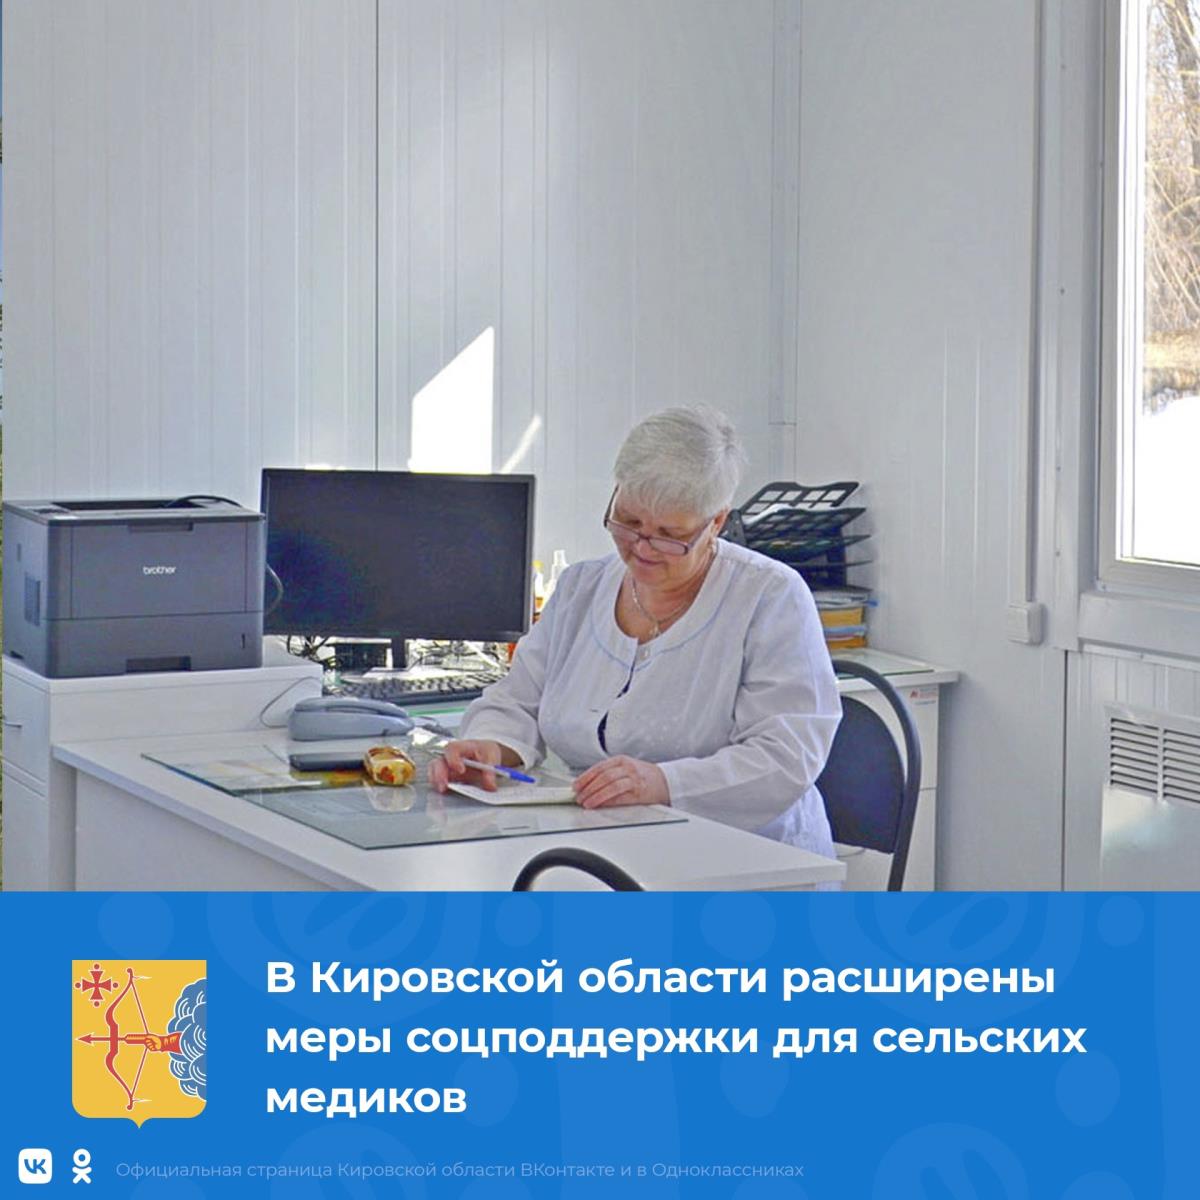 По поручению губернатора Кировской области Александра Соколова расширены меры социальной поддержки для сельских медиков